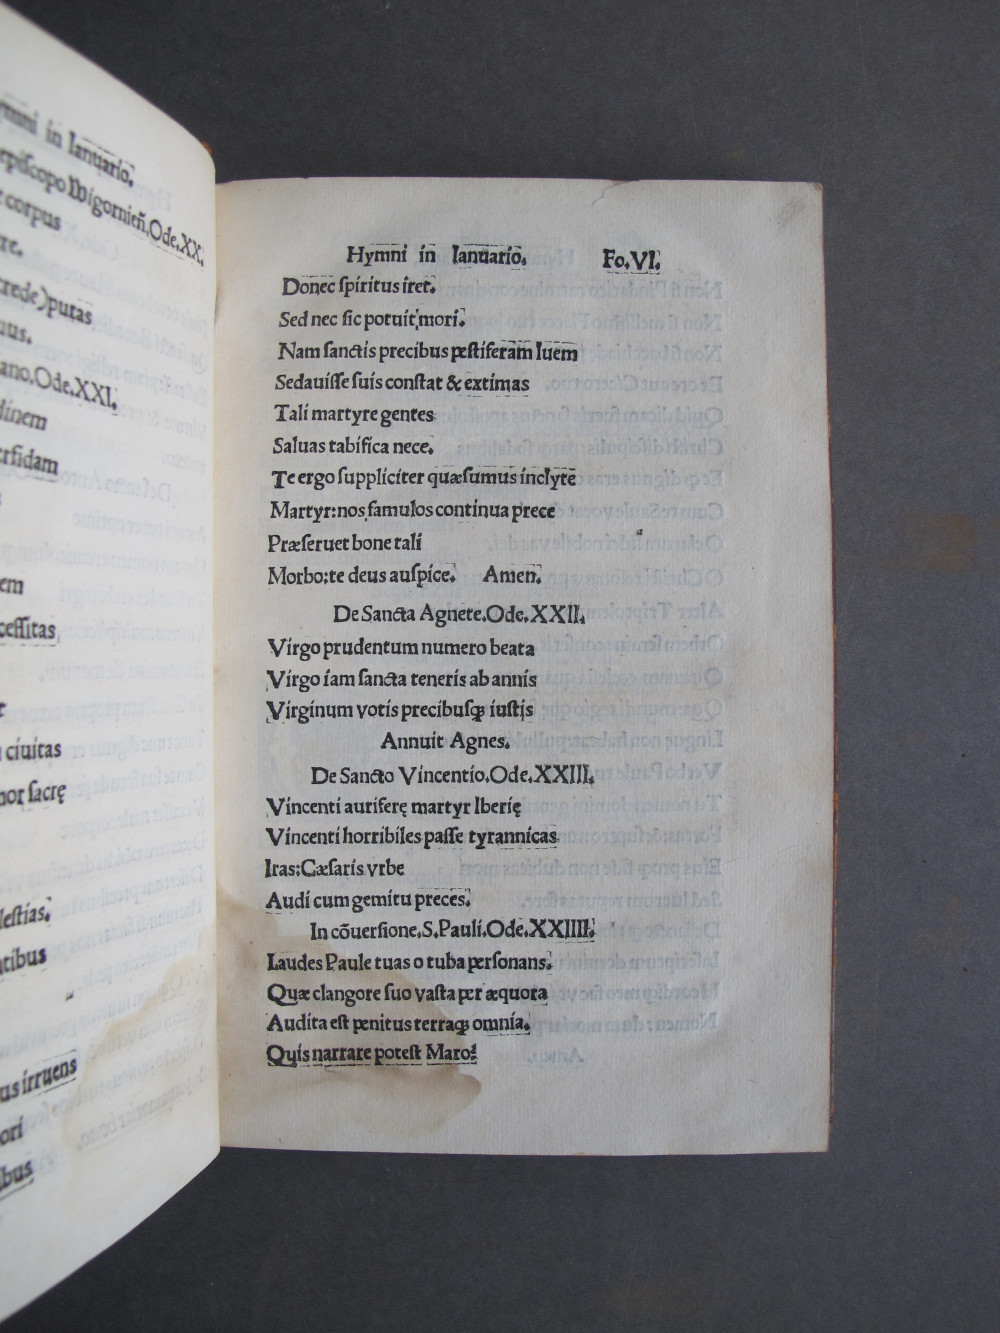 Folio 6 recto